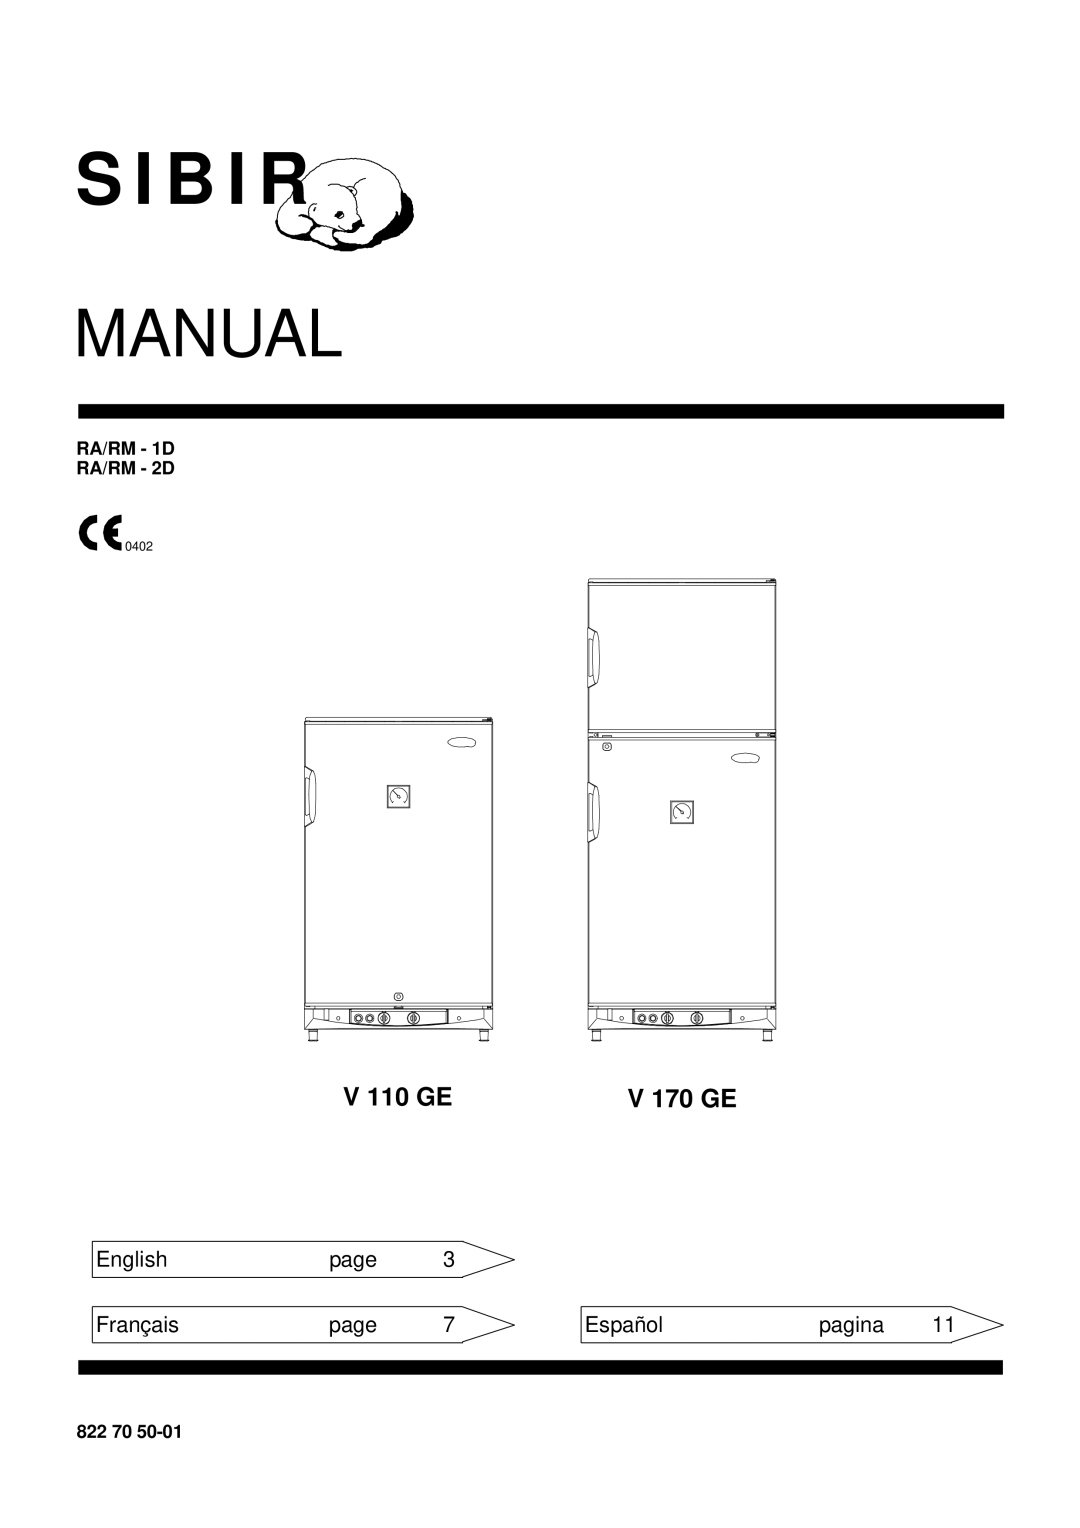 Sibir Optics V 110 GE manual V 170 GE, RA/RM - 1D RA/RM - 2D, 822, Manual, S I B I R, English, page, Français, Español 